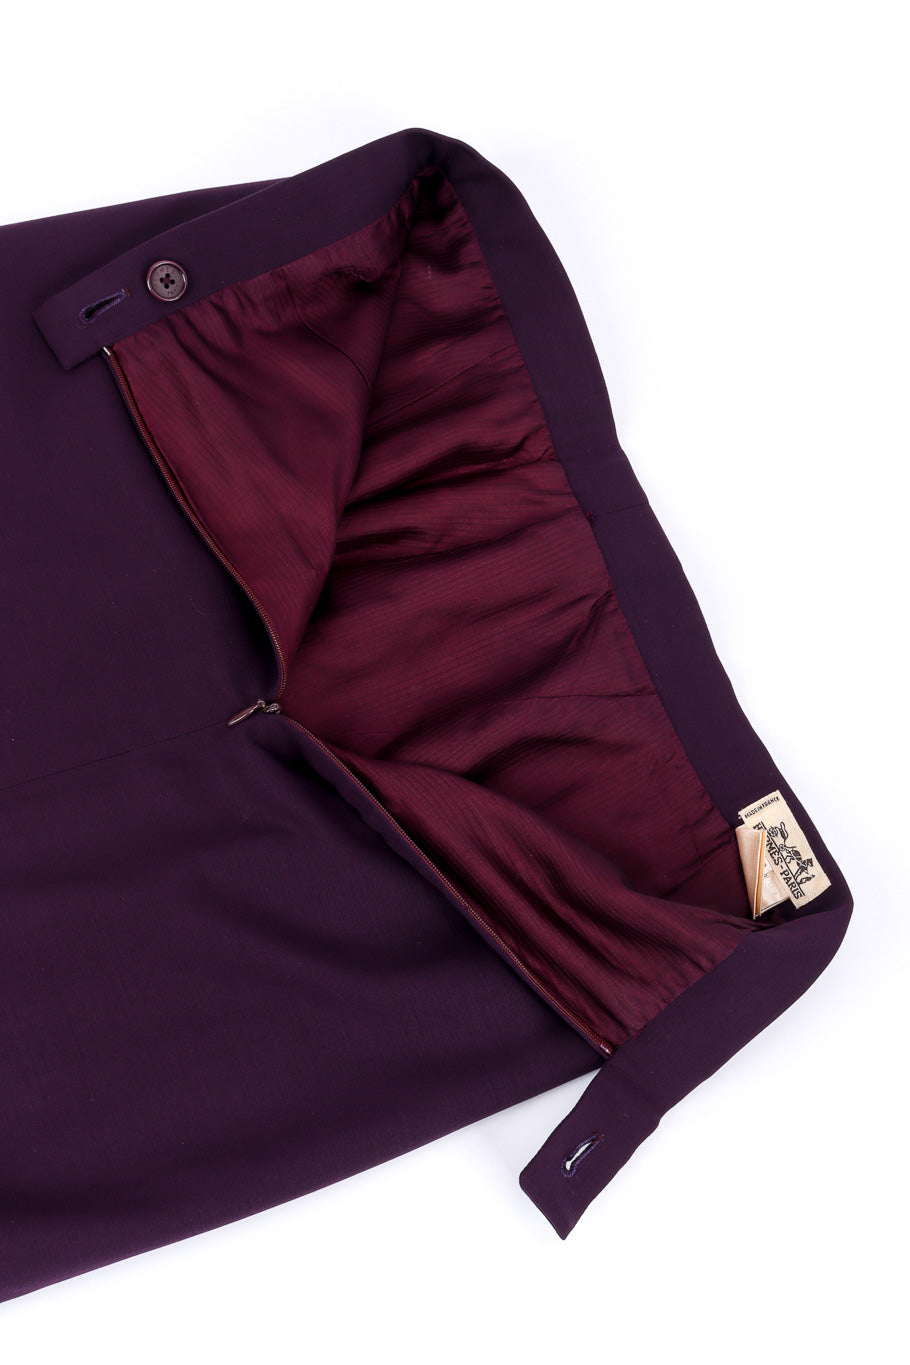 Vintage Hermés Asymmetrical Blazer and Skirt Set skirt unzipped @recessla